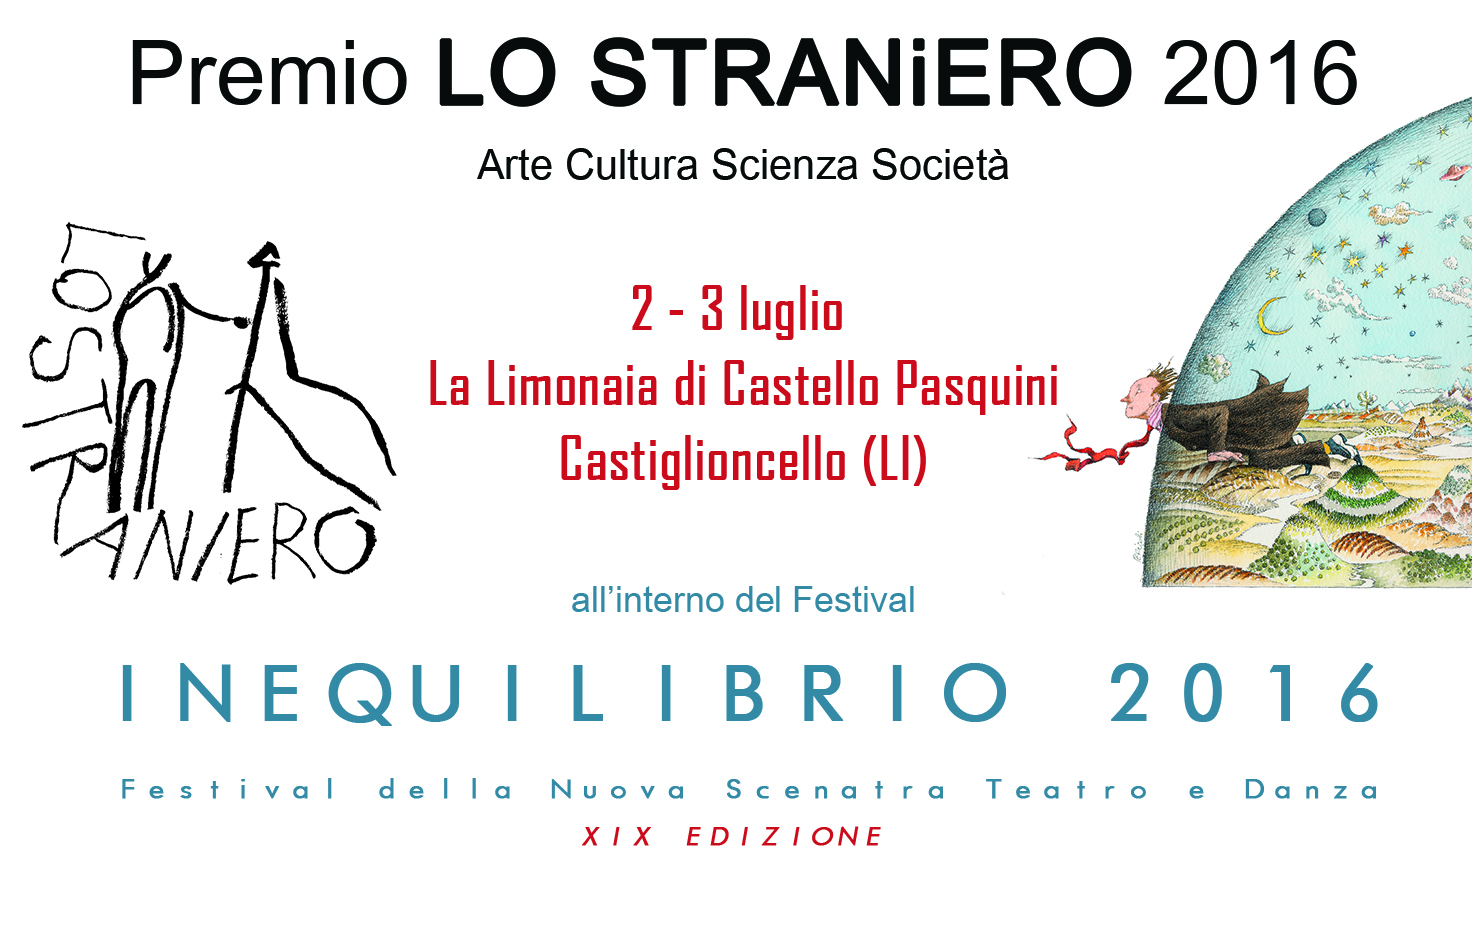 Premio LO STRANiERO 2016